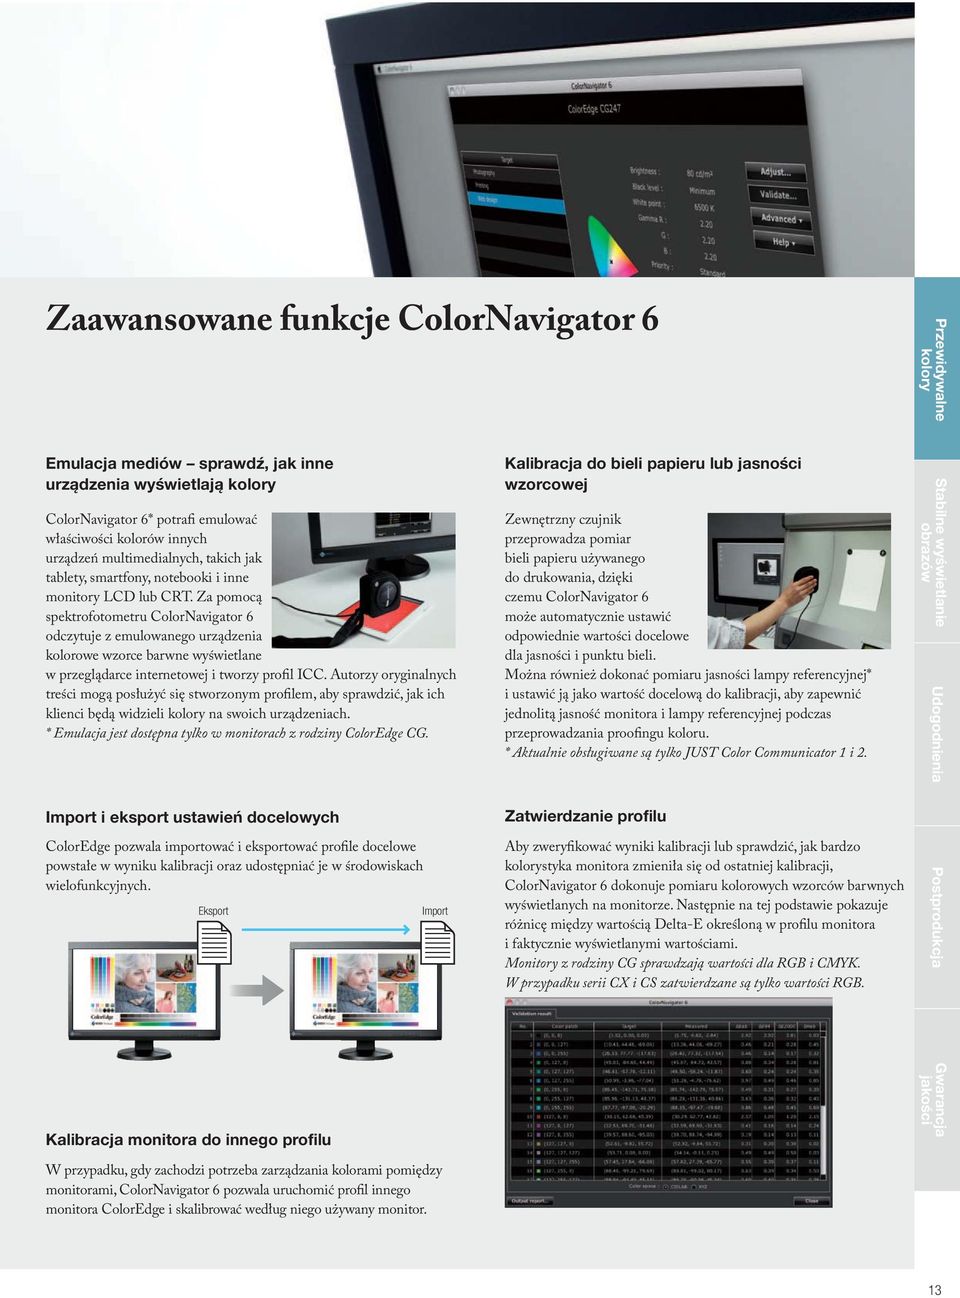 Za pomocą spektrofotometru ColorNavigator 6 odczytuje z emulowanego urządzenia kolorowe wzorce barwne wyświetlane w przeglądarce internetowej i tworzy profil ICC.